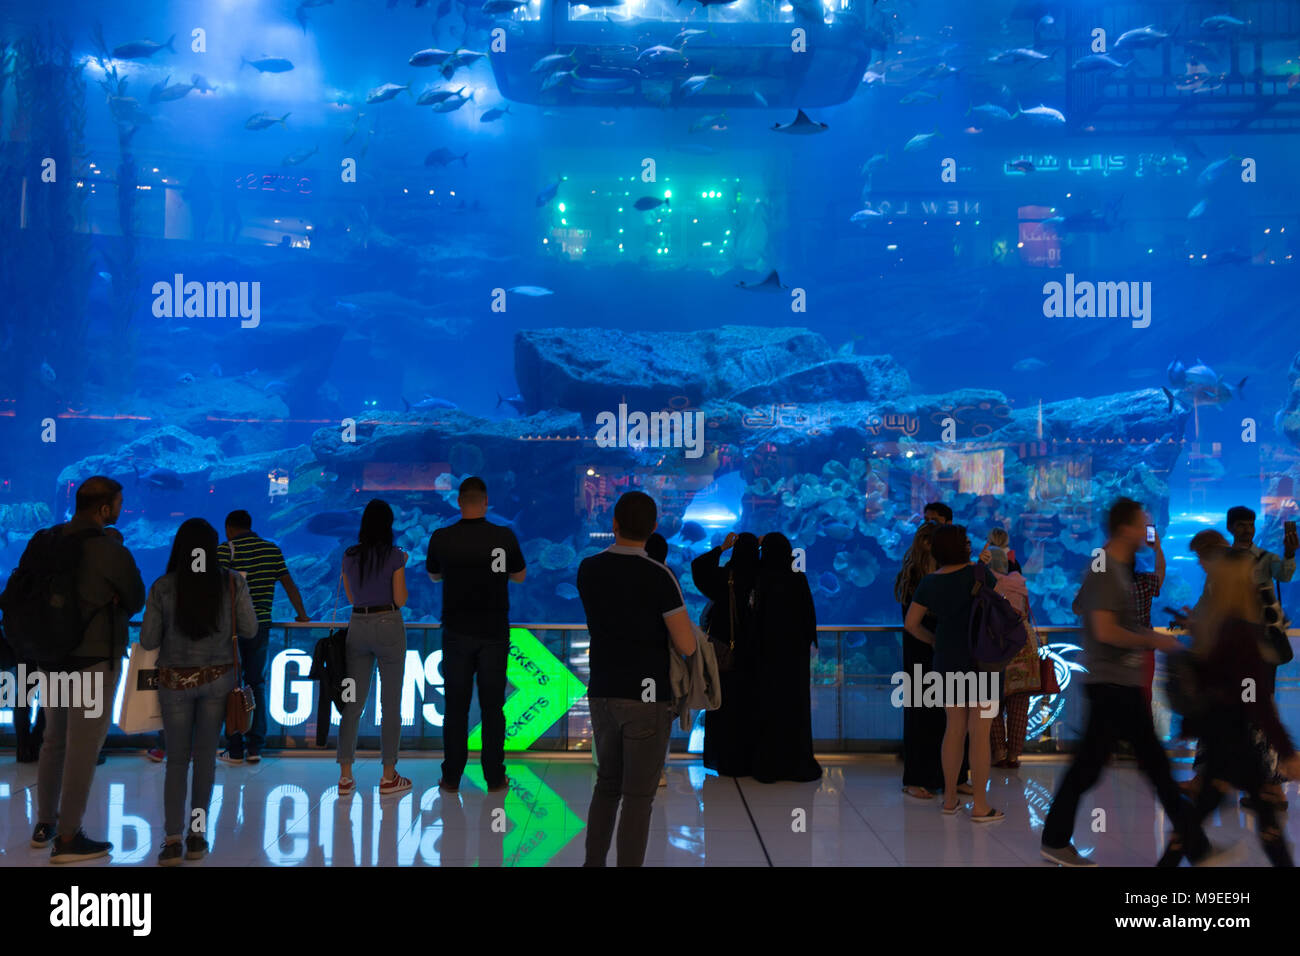 DUBAI, VAE - 10. Januar 2018: Sehr beliebte touristische Aktivität in der größten Shopping Mall der Welt ist gerade das meeresleben am schönen Aquarium mit Stockfoto